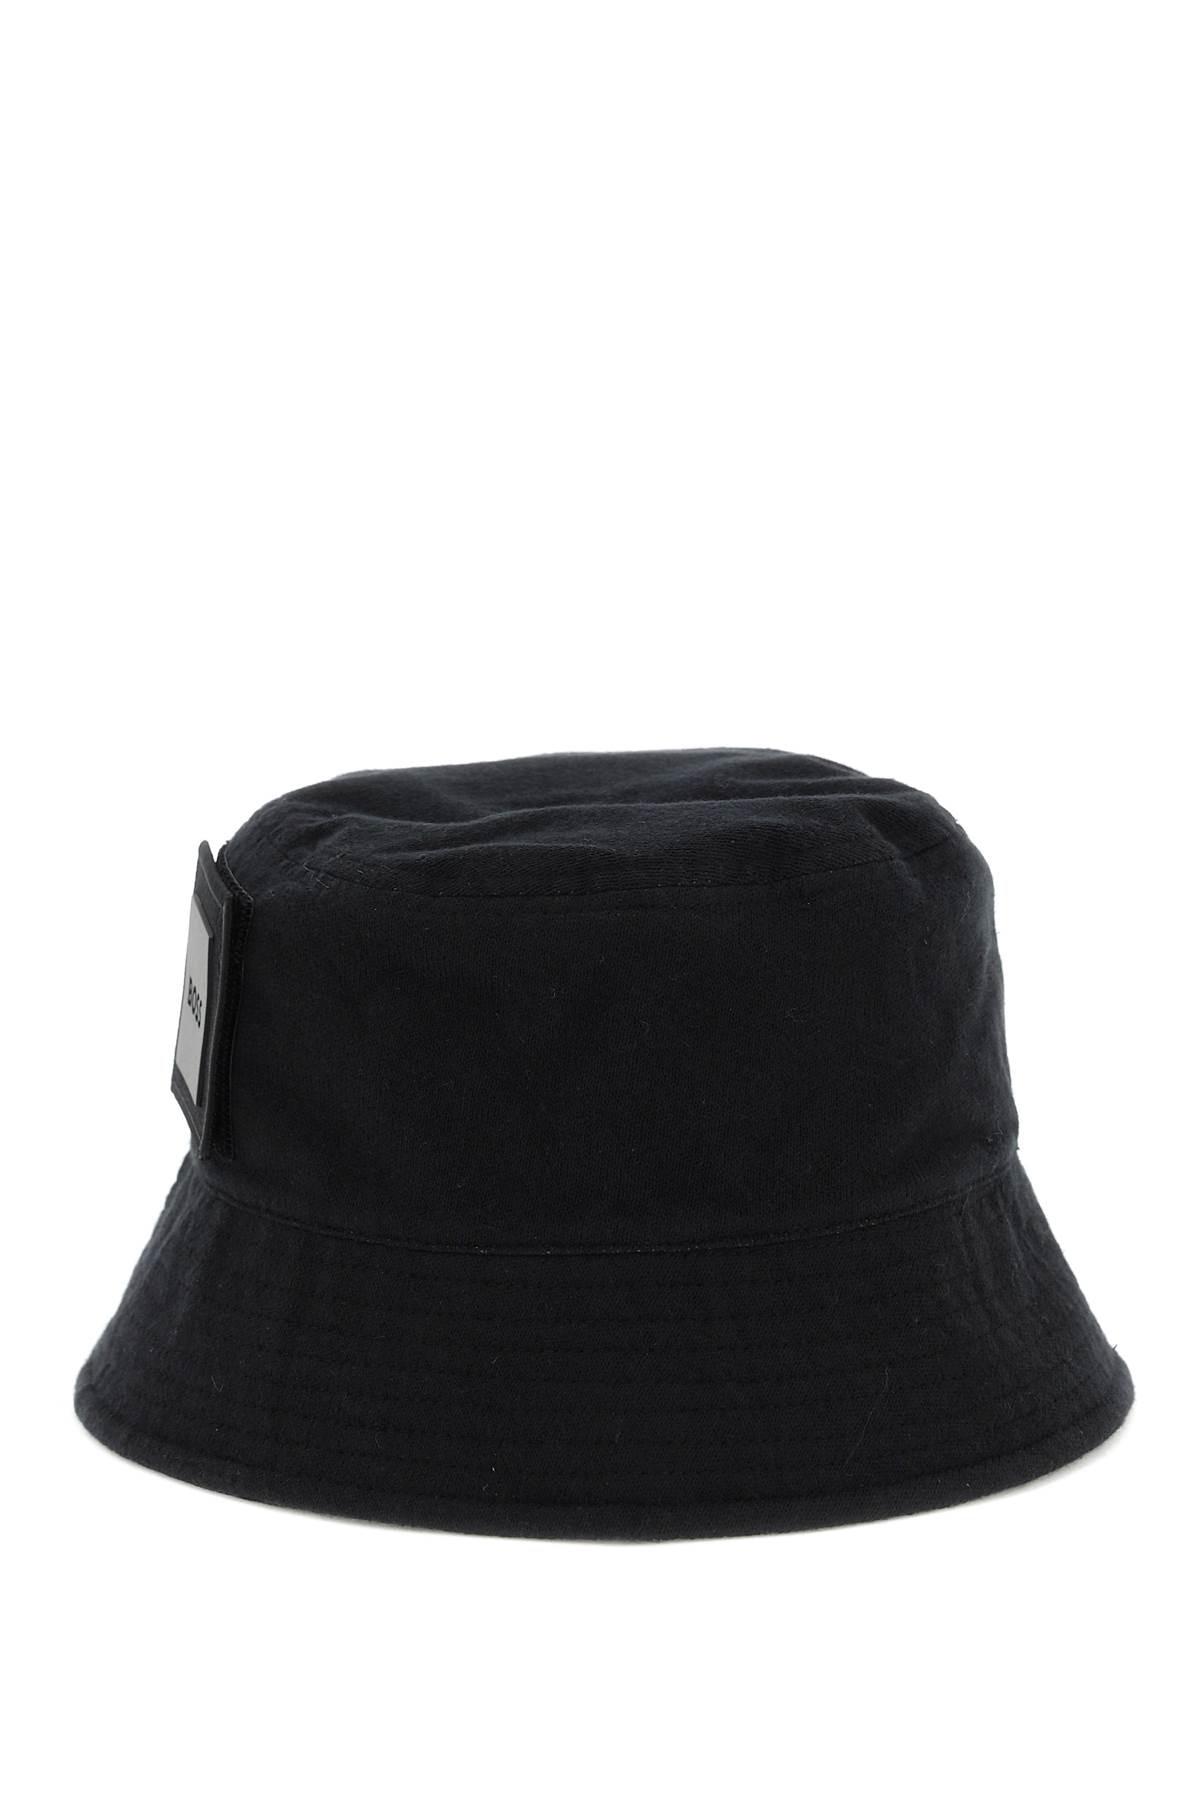 BOSS by HUGO BOSS Baseball Cap With Logo in Black for Men | Lyst